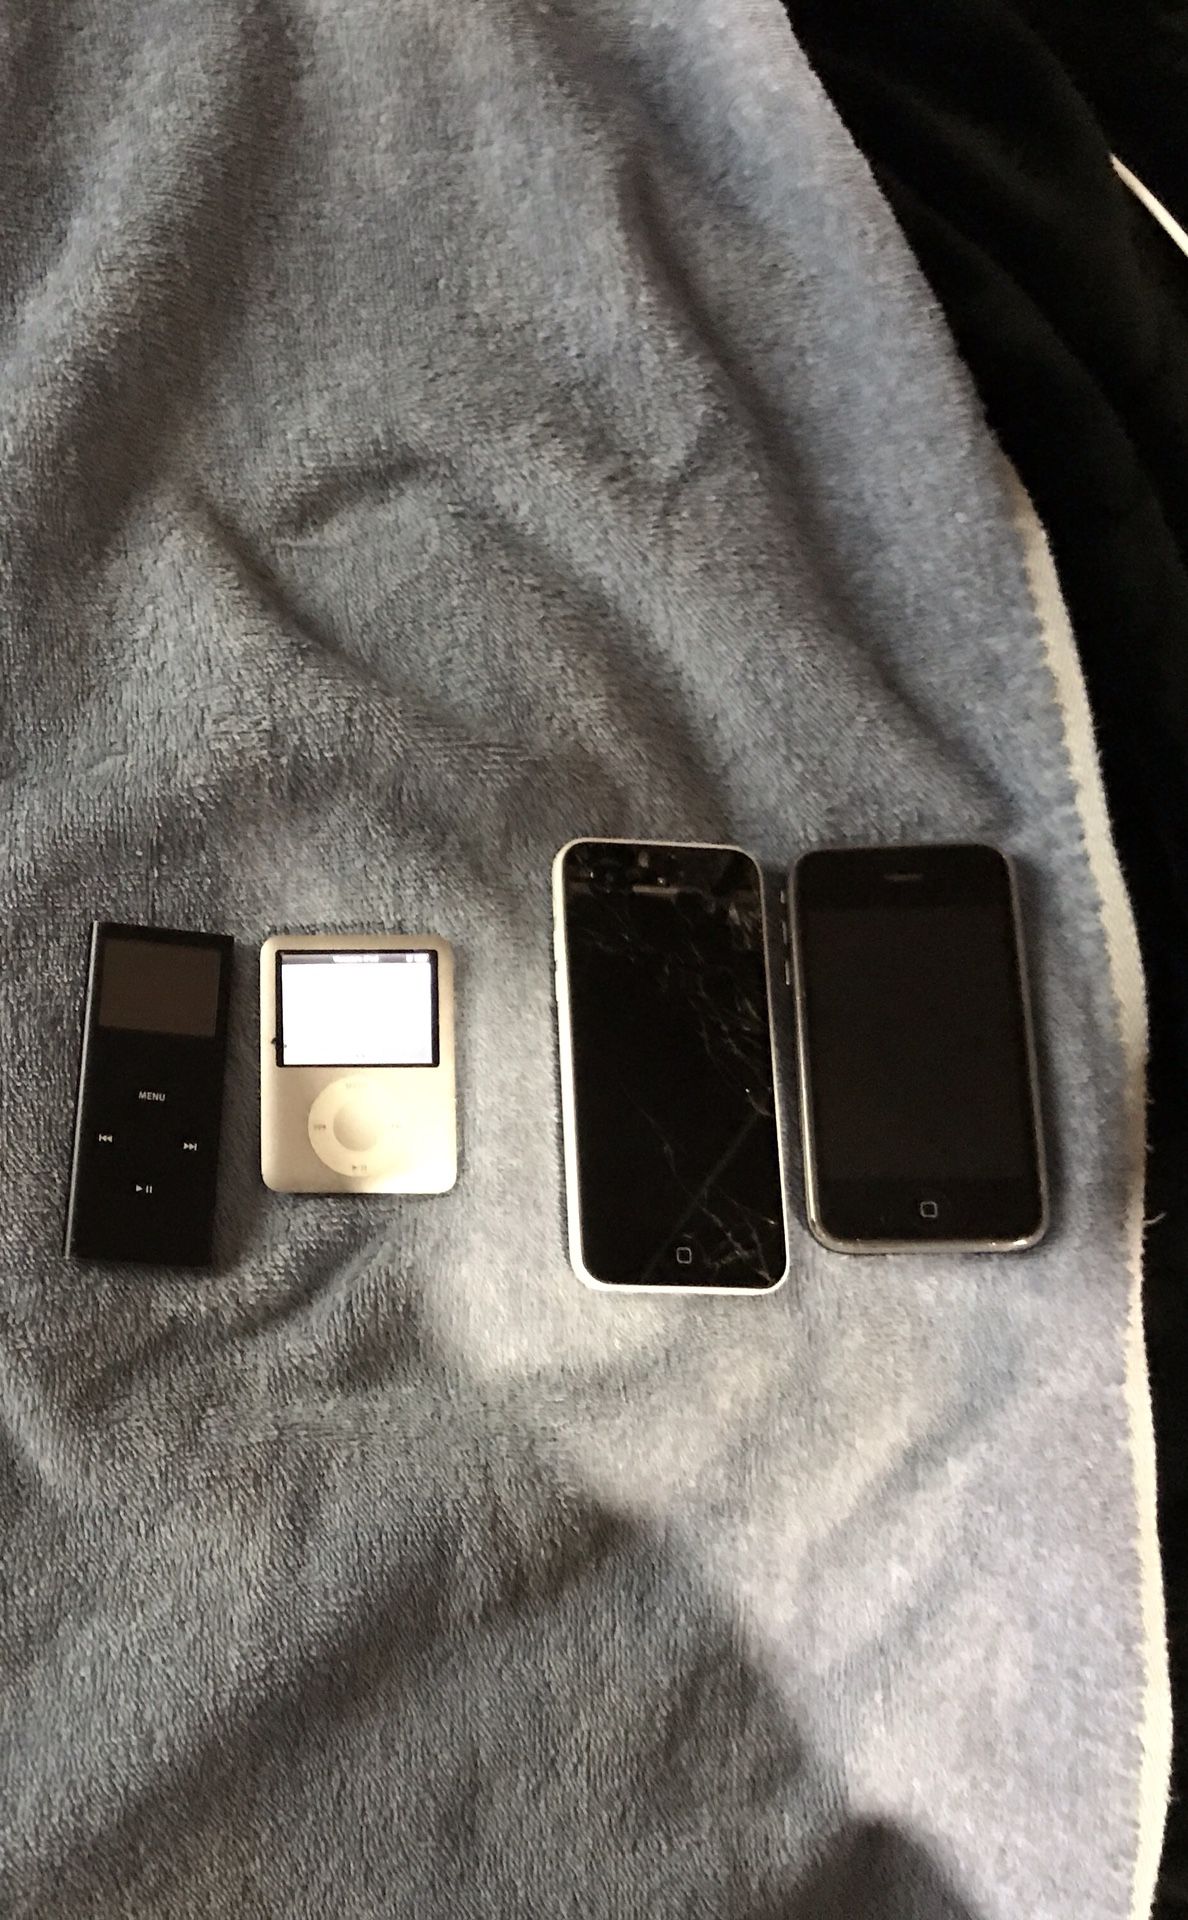 Apple iPhone/iPod bundle